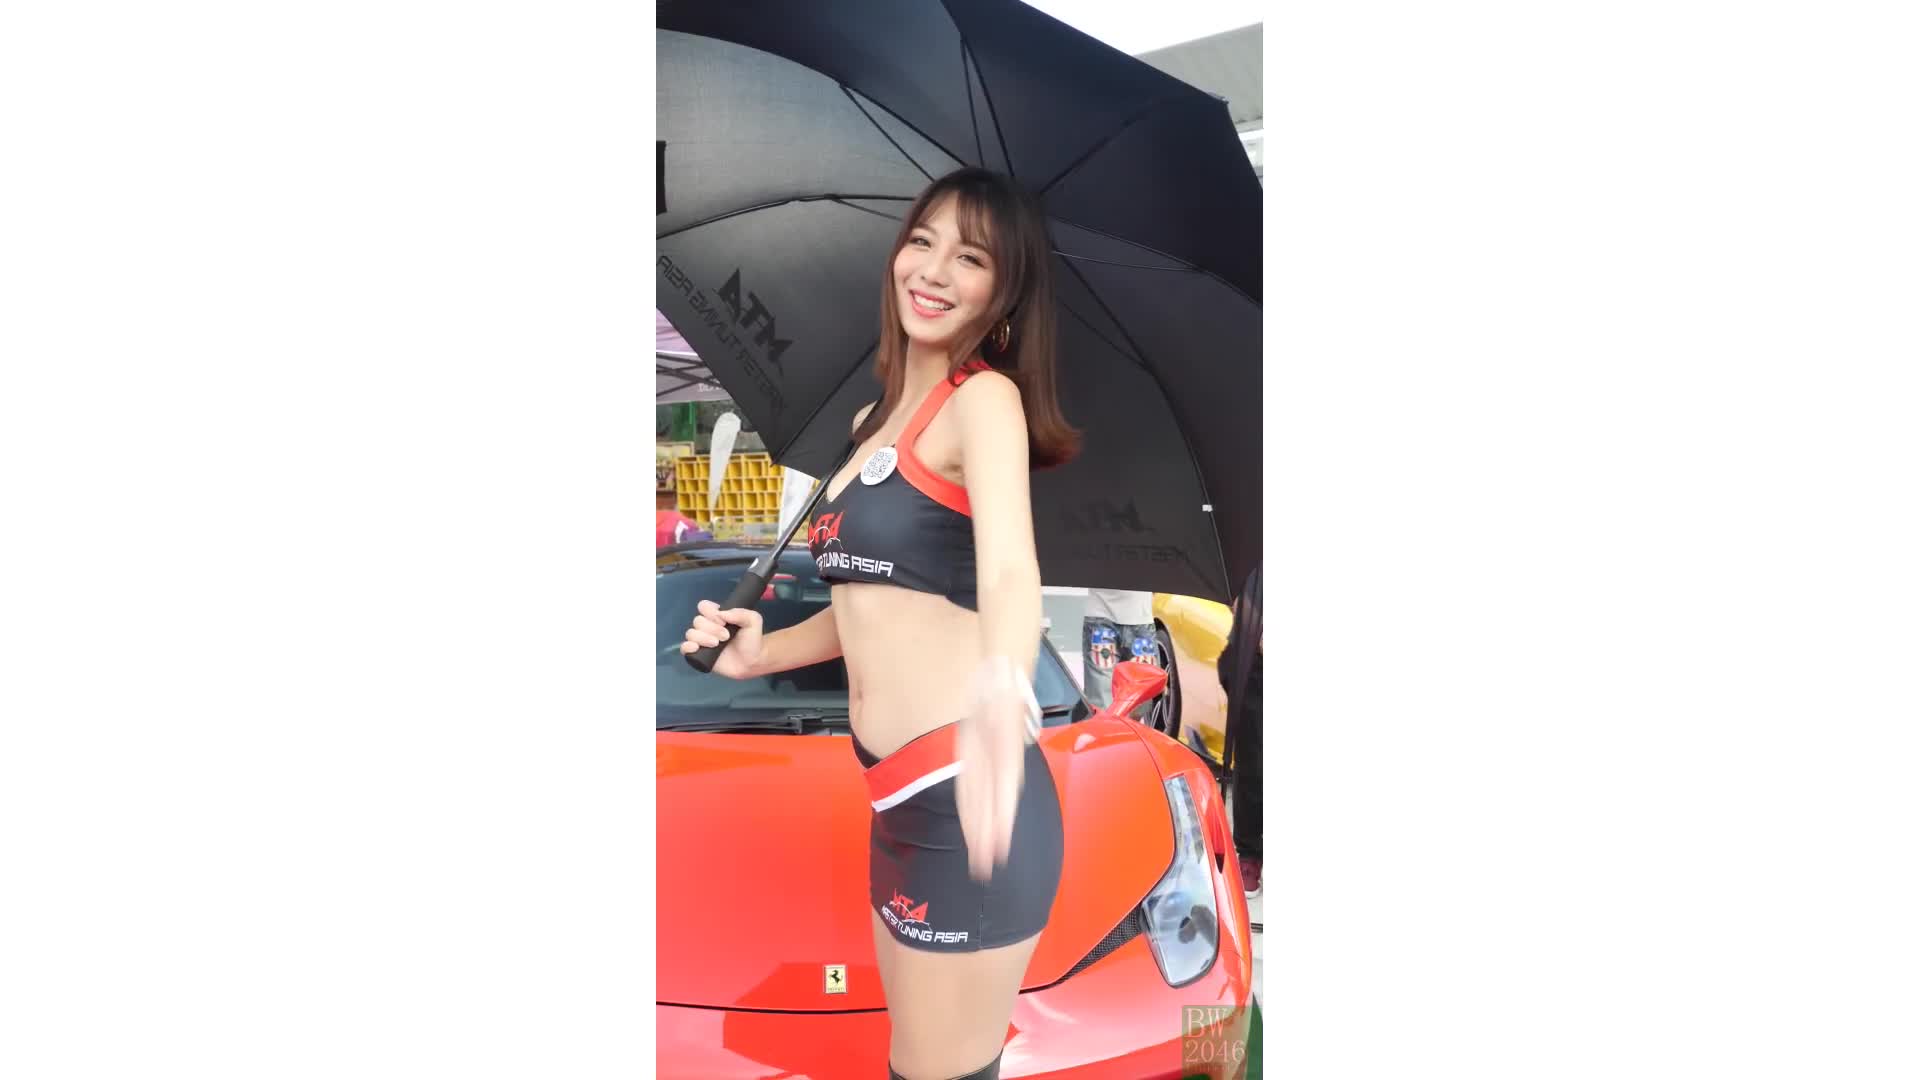 鄧舒凡 (舒凡多多 Ally) - Racing Model 레이싱모델 車模 車展女模 01 @ 香港汽車節 Hong Kong Auto Festival 2019 (Vertical)